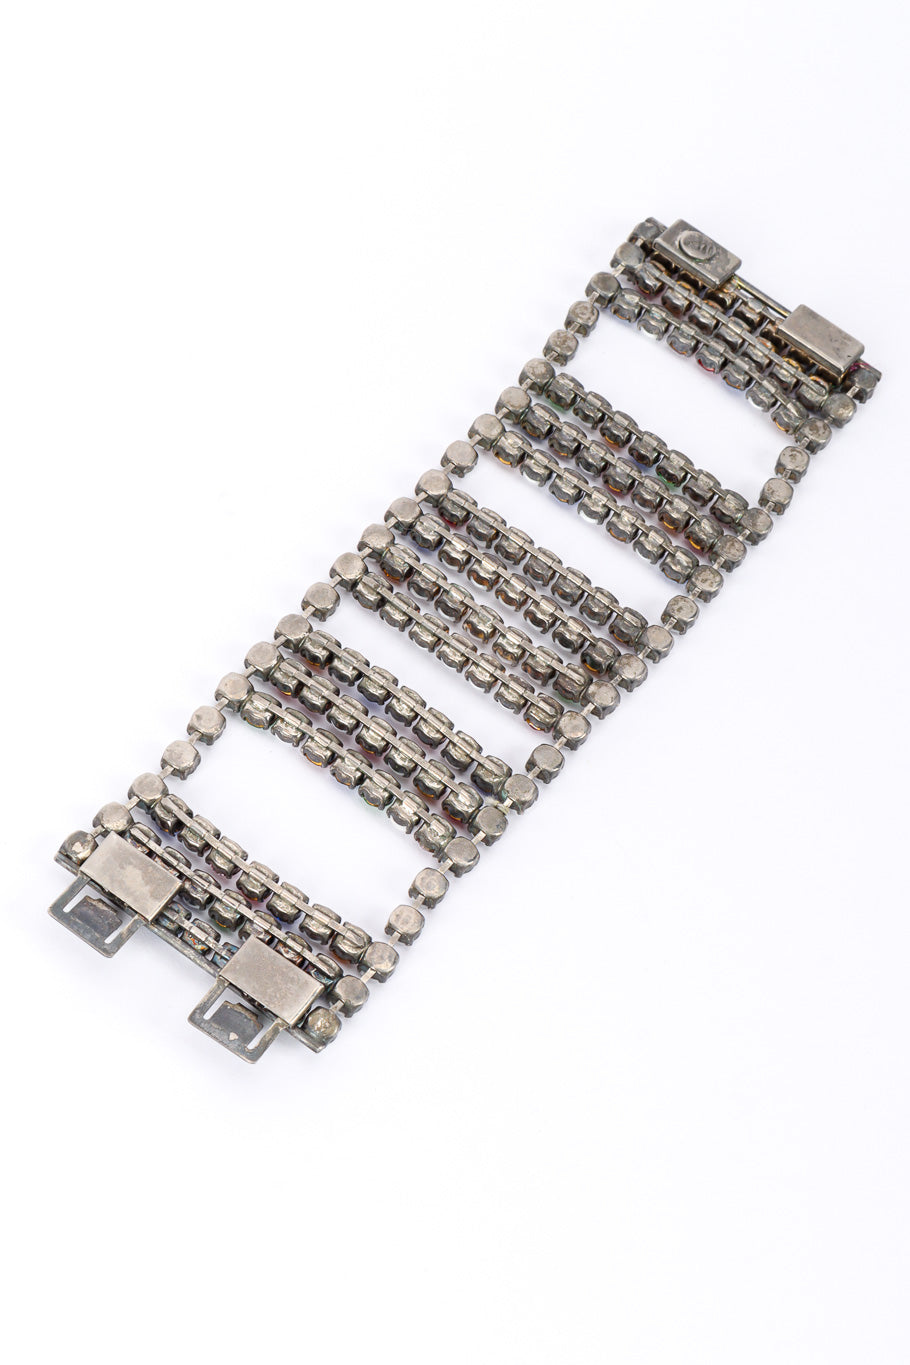 Vintage De Liguoro Crystal Frame Bracelet back condition @recessla